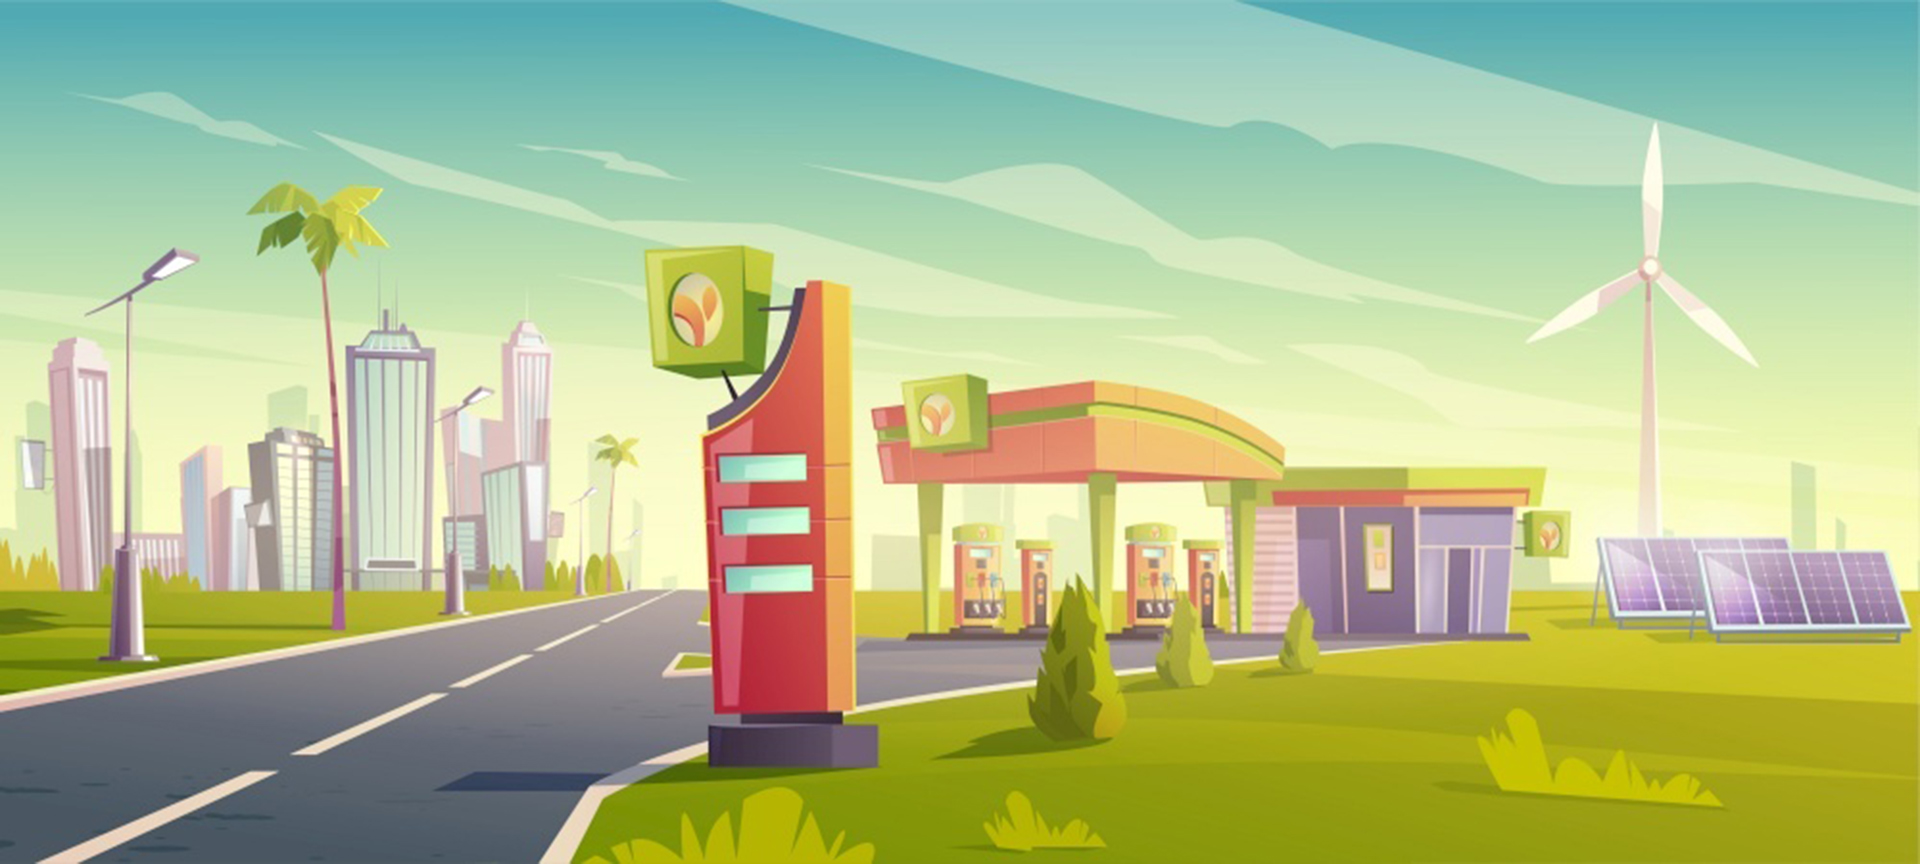 Trạm xăng sinh thái, dịch vụ tiếp nhiên liệu cho ô tô thành phố xanh, cửa hàng xăng dầu thân thiện với thiên nhiên với cối xay gió, tấm pin mặt trời, tòa nhà và trưng bày giá, bán nhiên liệu sinh học cho xe đô thị.Phim hoạt hình minh họa vector